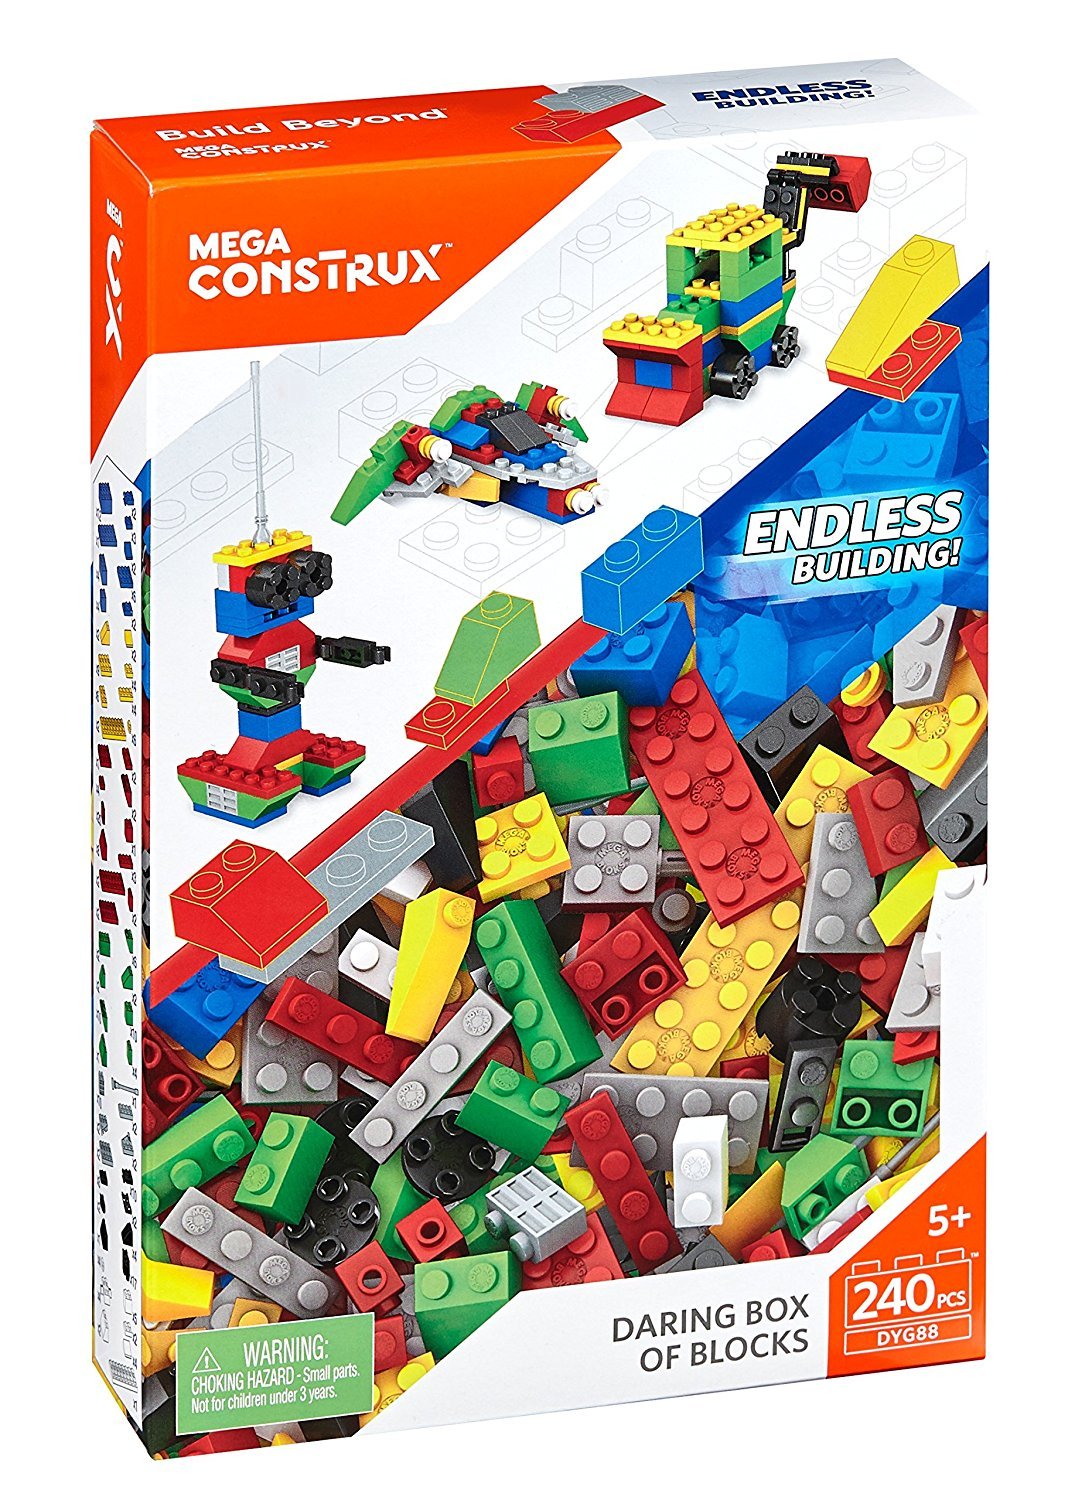 Giant Building Blocks Set (240 Pieces) Boy Mega Bloks Cons Trux